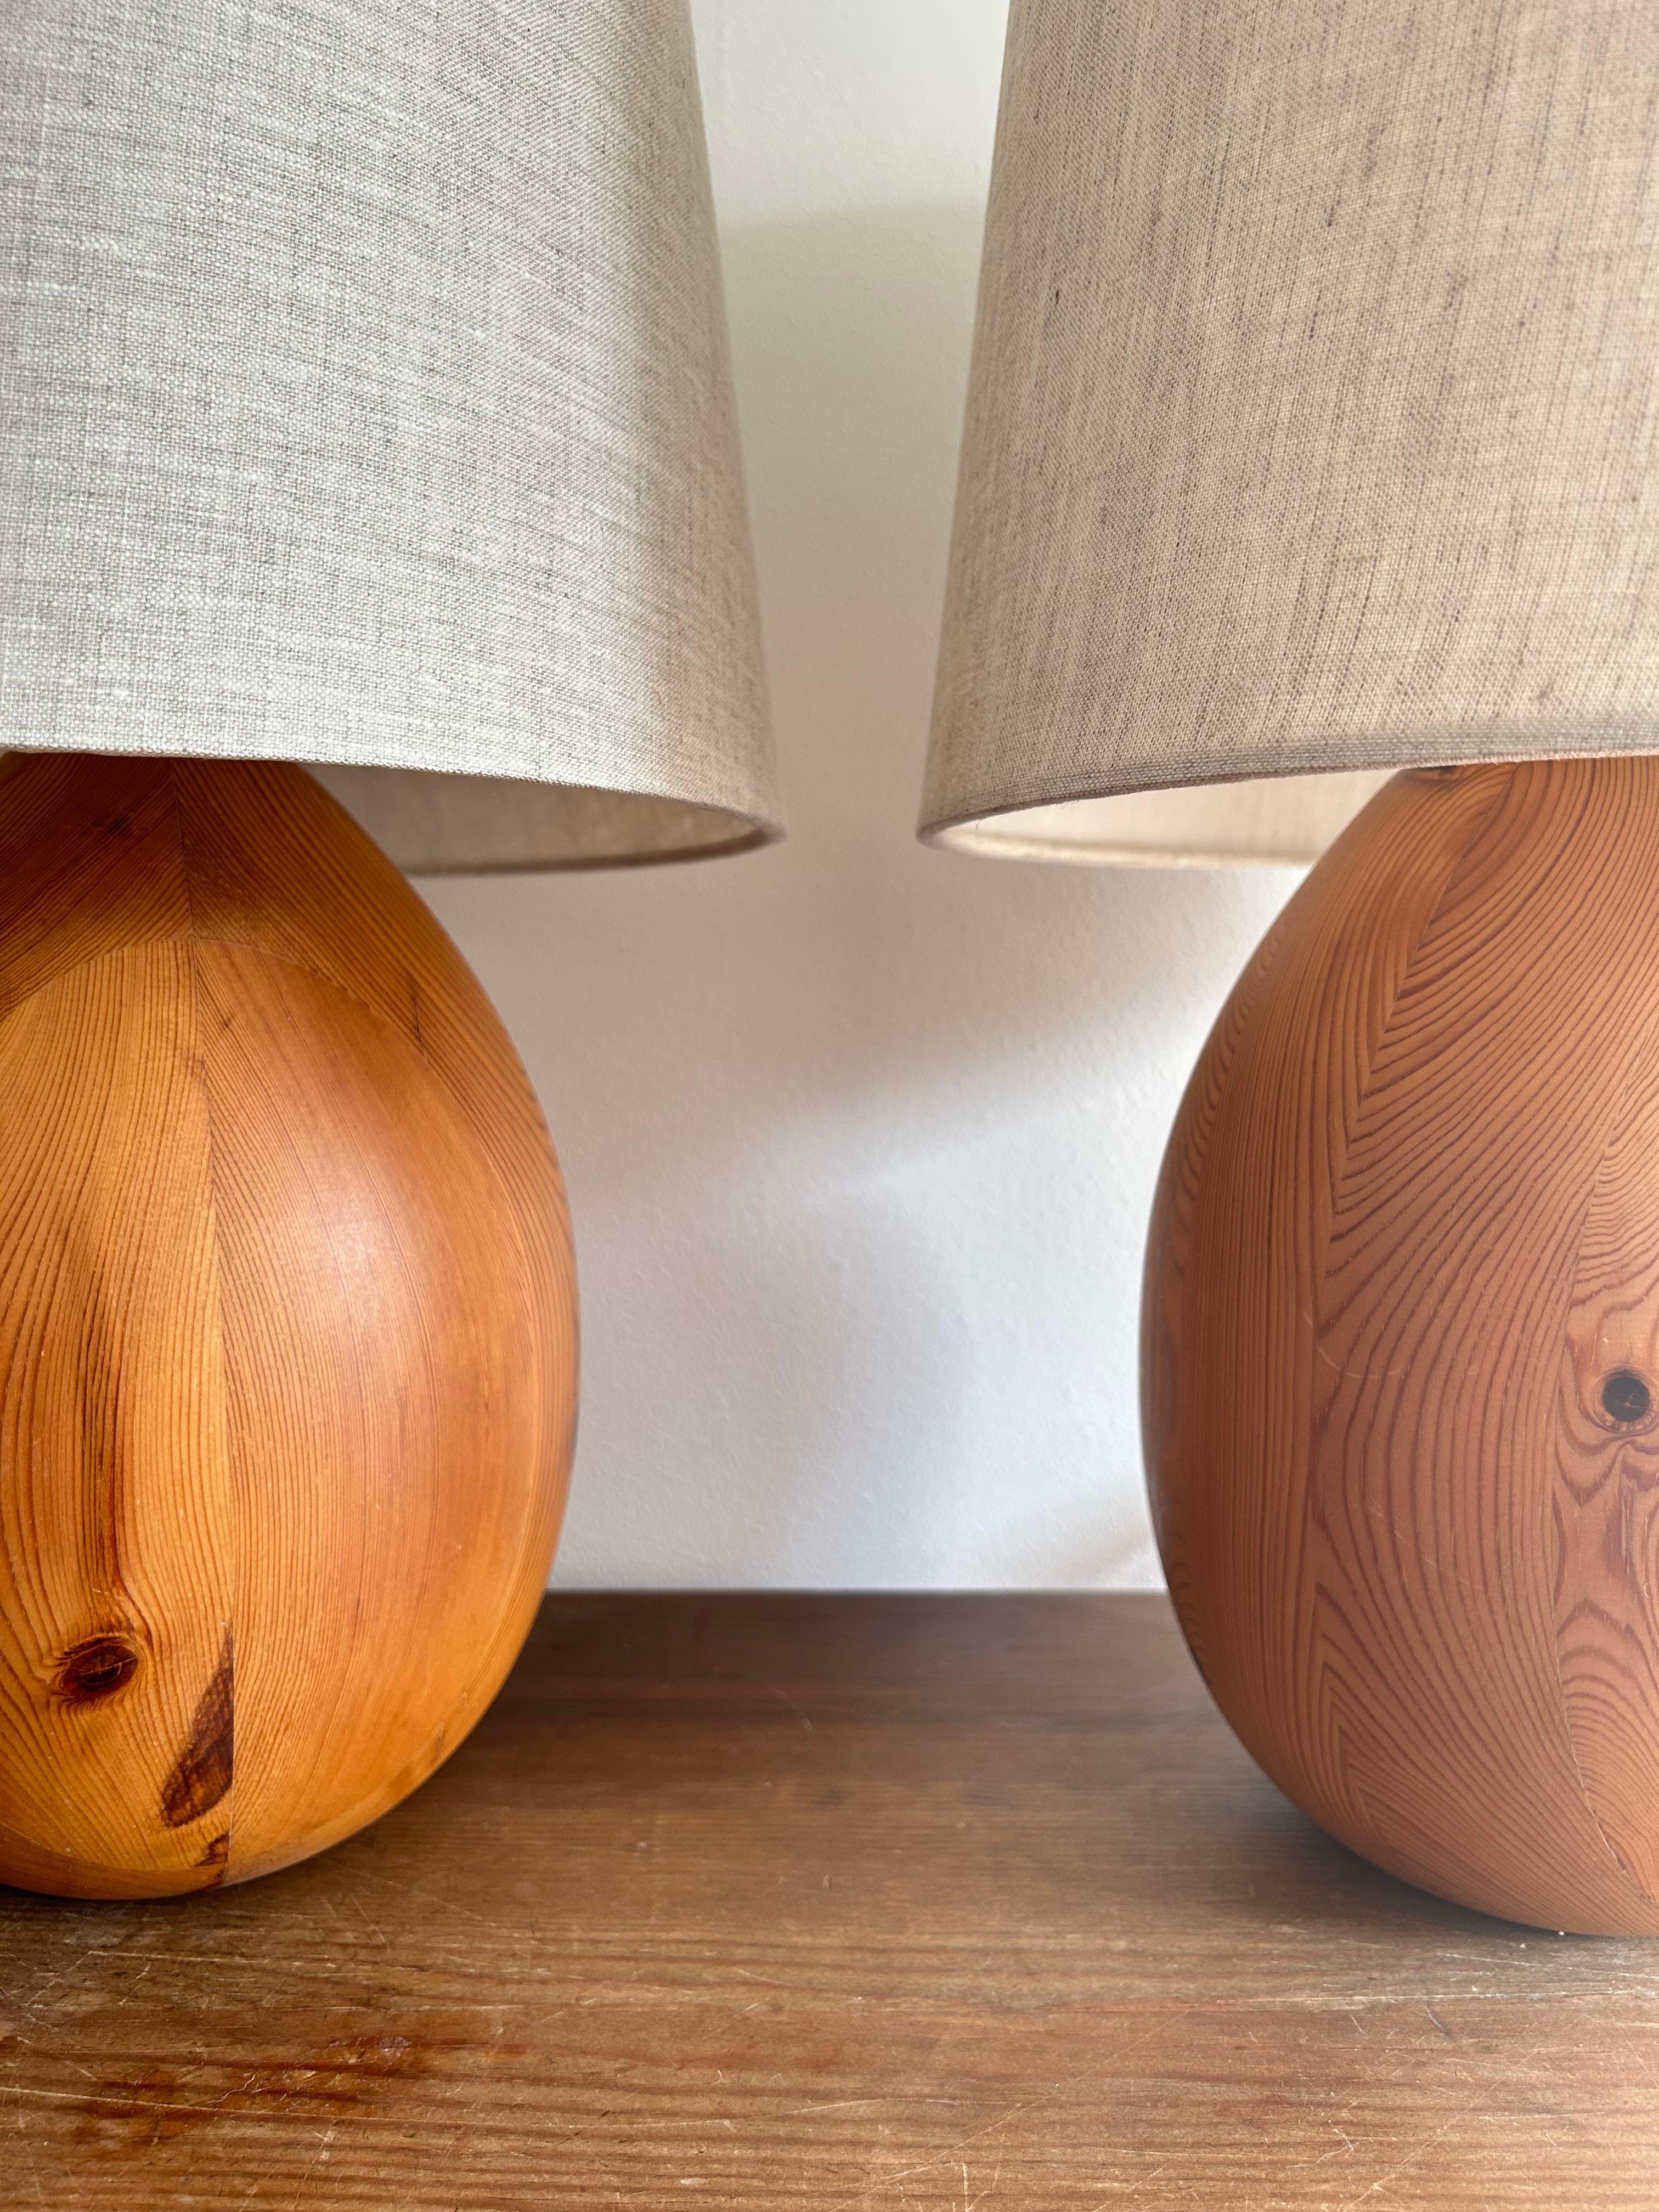 Seltenes Paar Tischlampen aus Kiefer, hergestellt in Schweden in den 1960er Jahren.

Die Lampen sind aus Kiefernholz gefertigt, das mit Öl behandelt wurde, wodurch die schöne Maserung noch besser zur Geltung kommt.
Die Lampen haben die